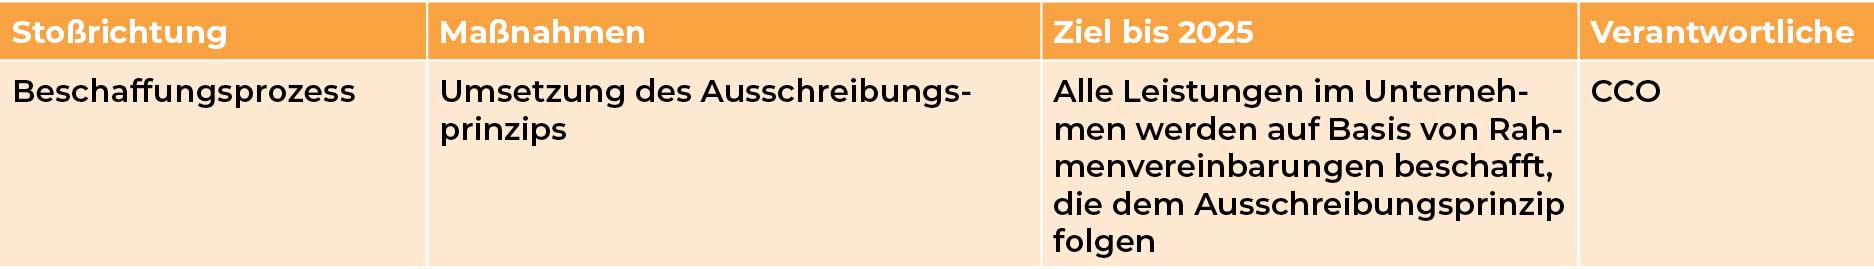 Mediengruppe Wiener Zeitung Nachhaltigkeitsbericht 2023 - mgwznb_cg_fairer-wettbewerb